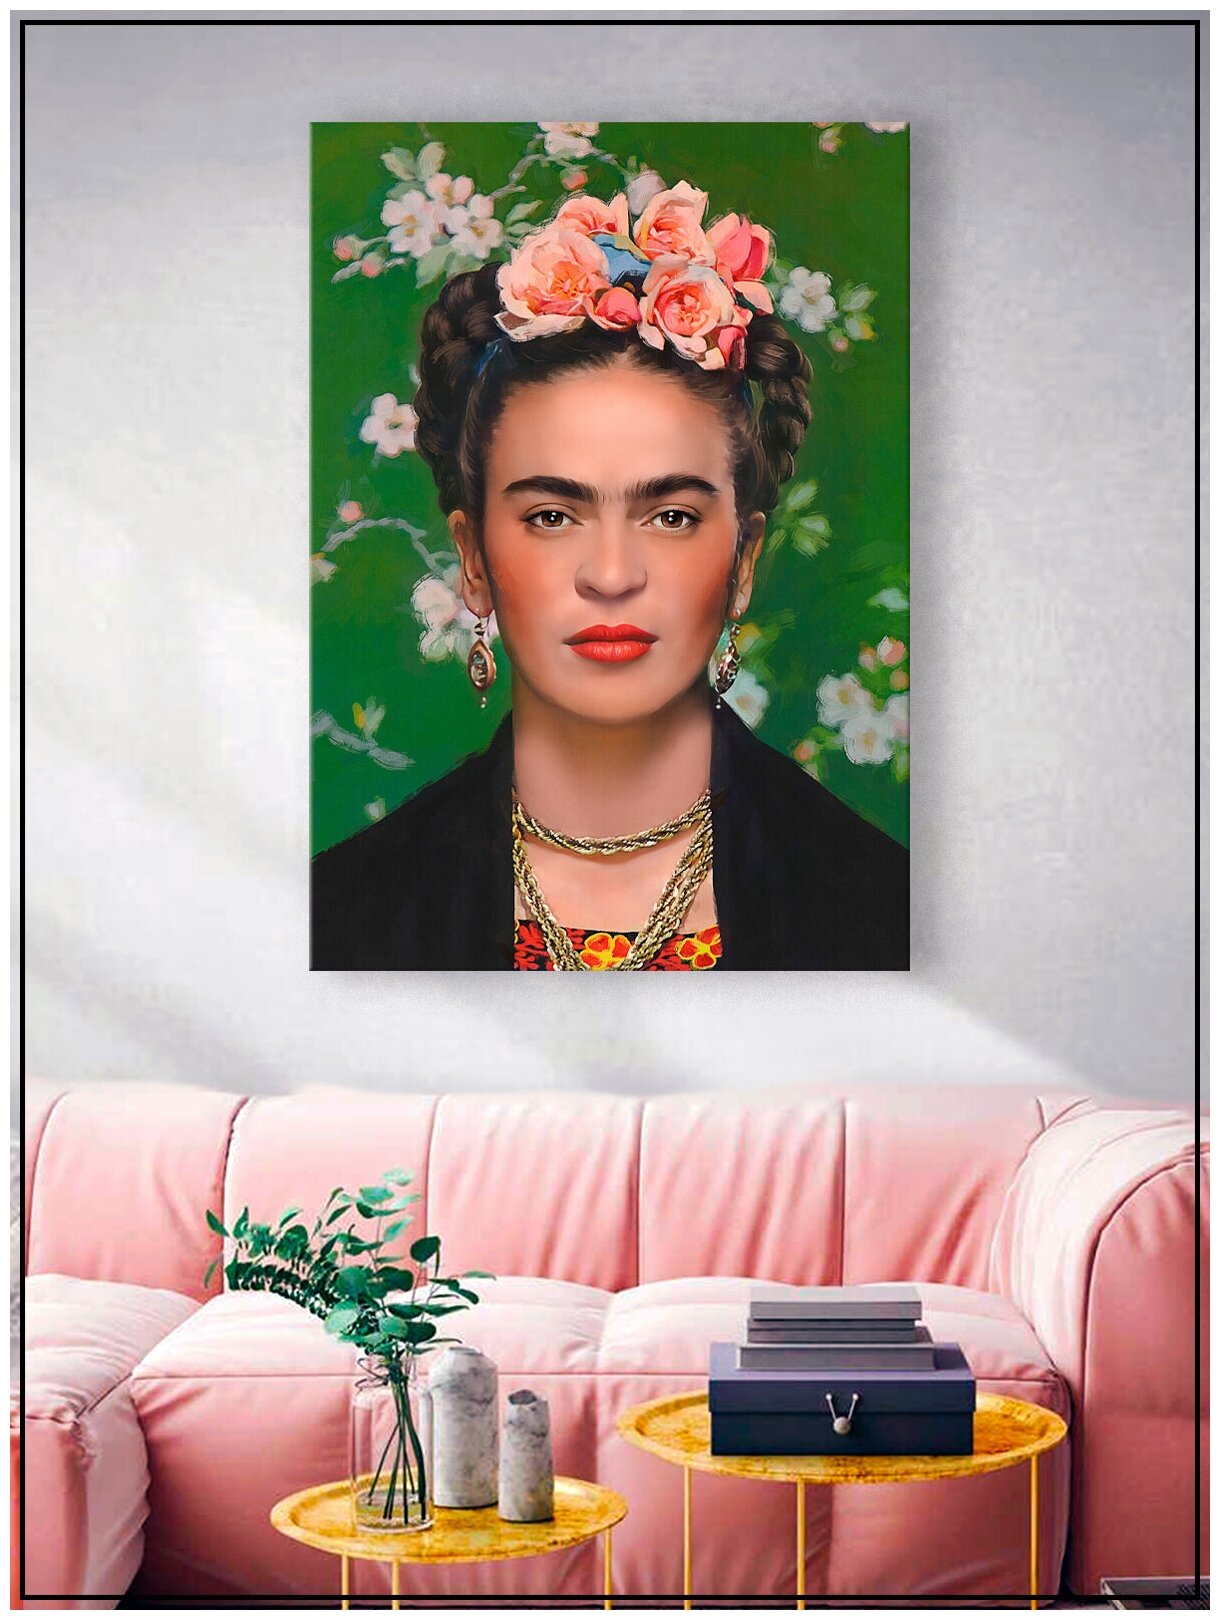 Картина для интерьера на натуральном хлопковом холсте "Фрида Кало", 30*40см, холст на подрамнике, картина в подарок для дома